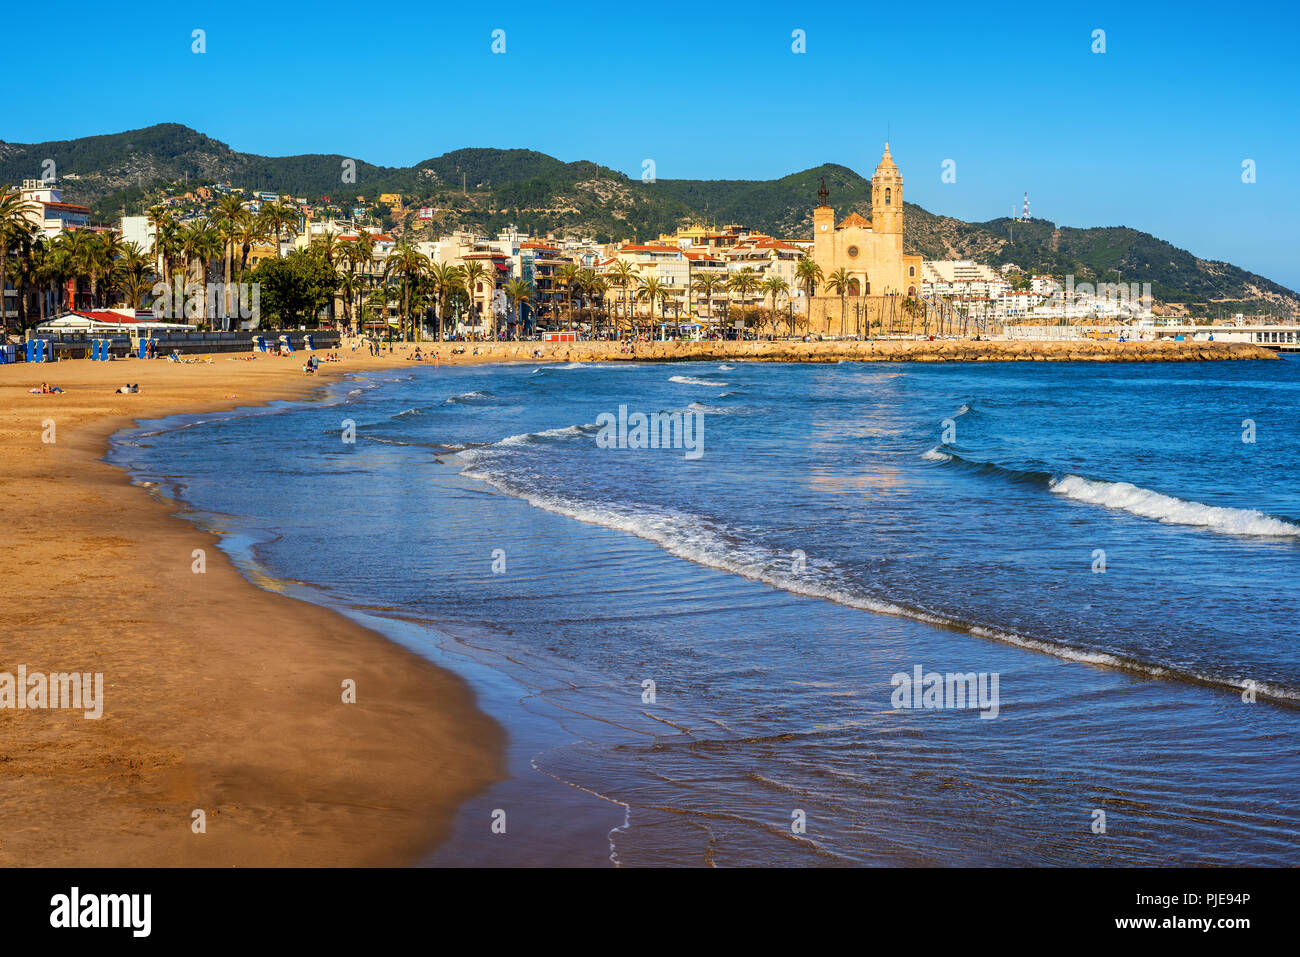 Plage de sable et sa vieille ville historique complexe méditerranéen à Sitges près de Barcelone, Costa Dorada, Catalogne, Espagne Banque D'Images